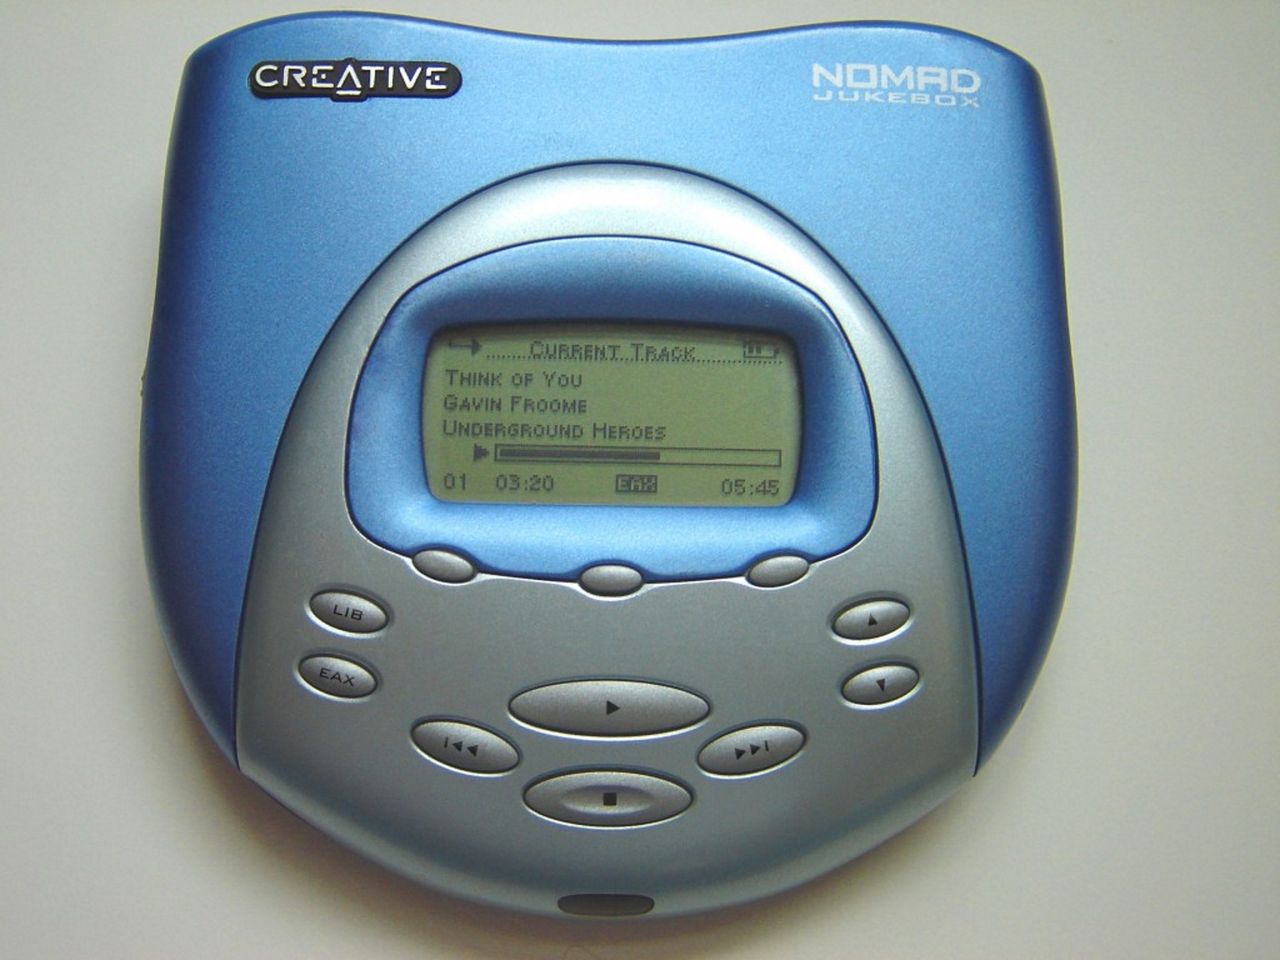 Creative NOMAD Jukebox - odtwarzacz MP3 z twardym dyskiem o pojemności 6 GB